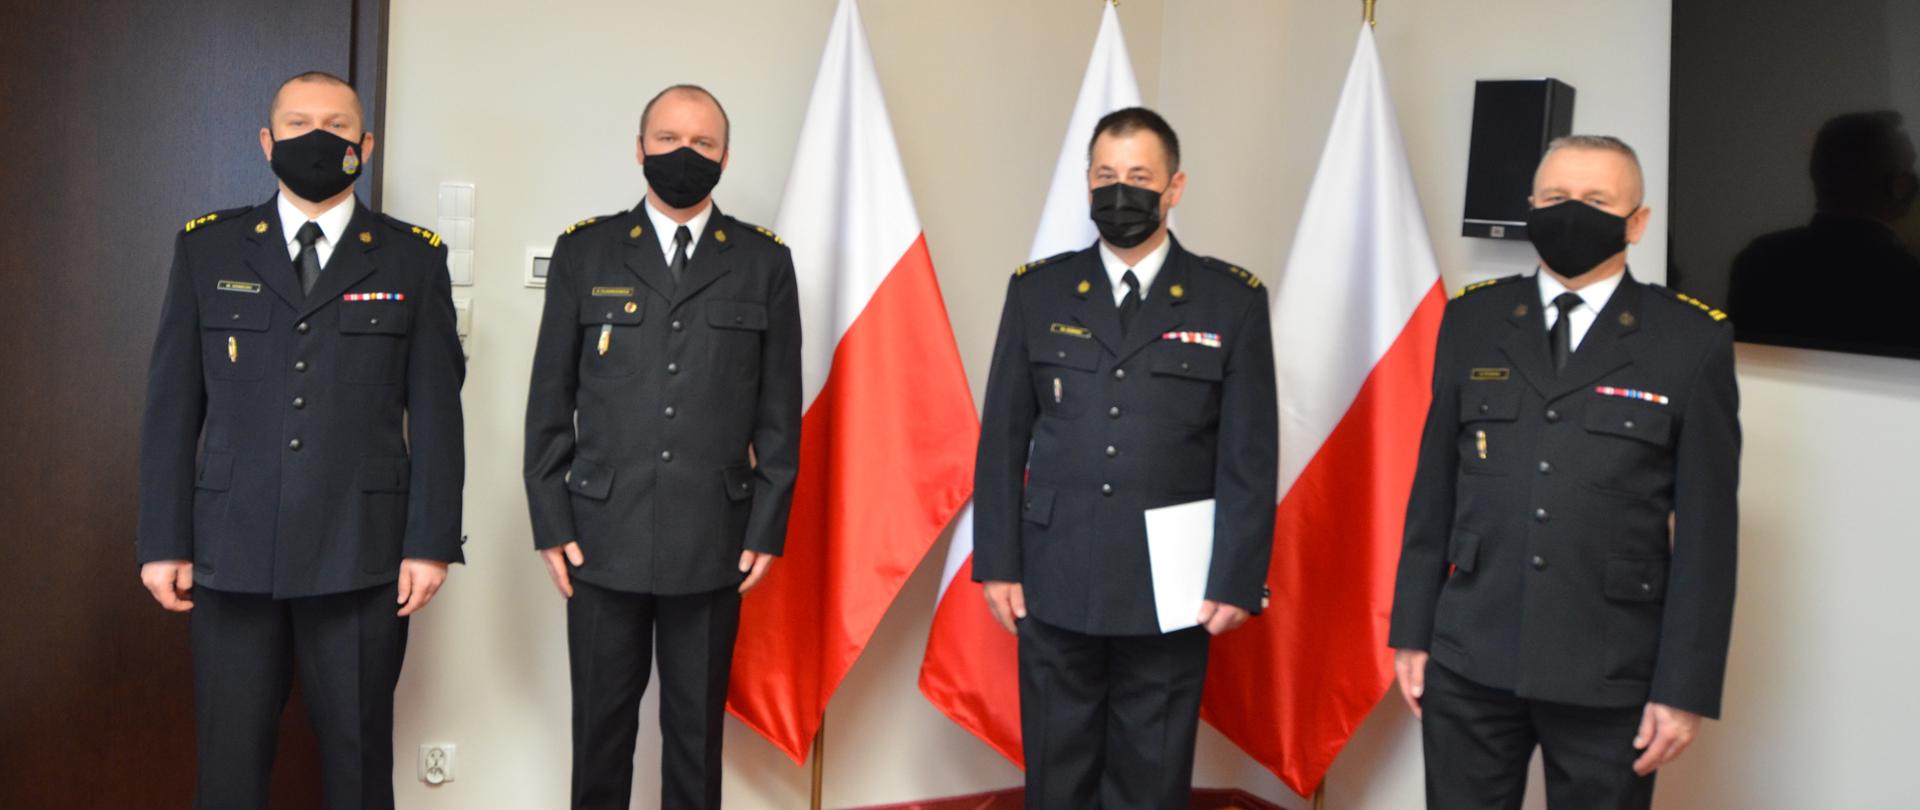 Na zdjęciu widać trzech strażaków w umundurowaniu wyjściowym. W tle trzy flagi Polski.